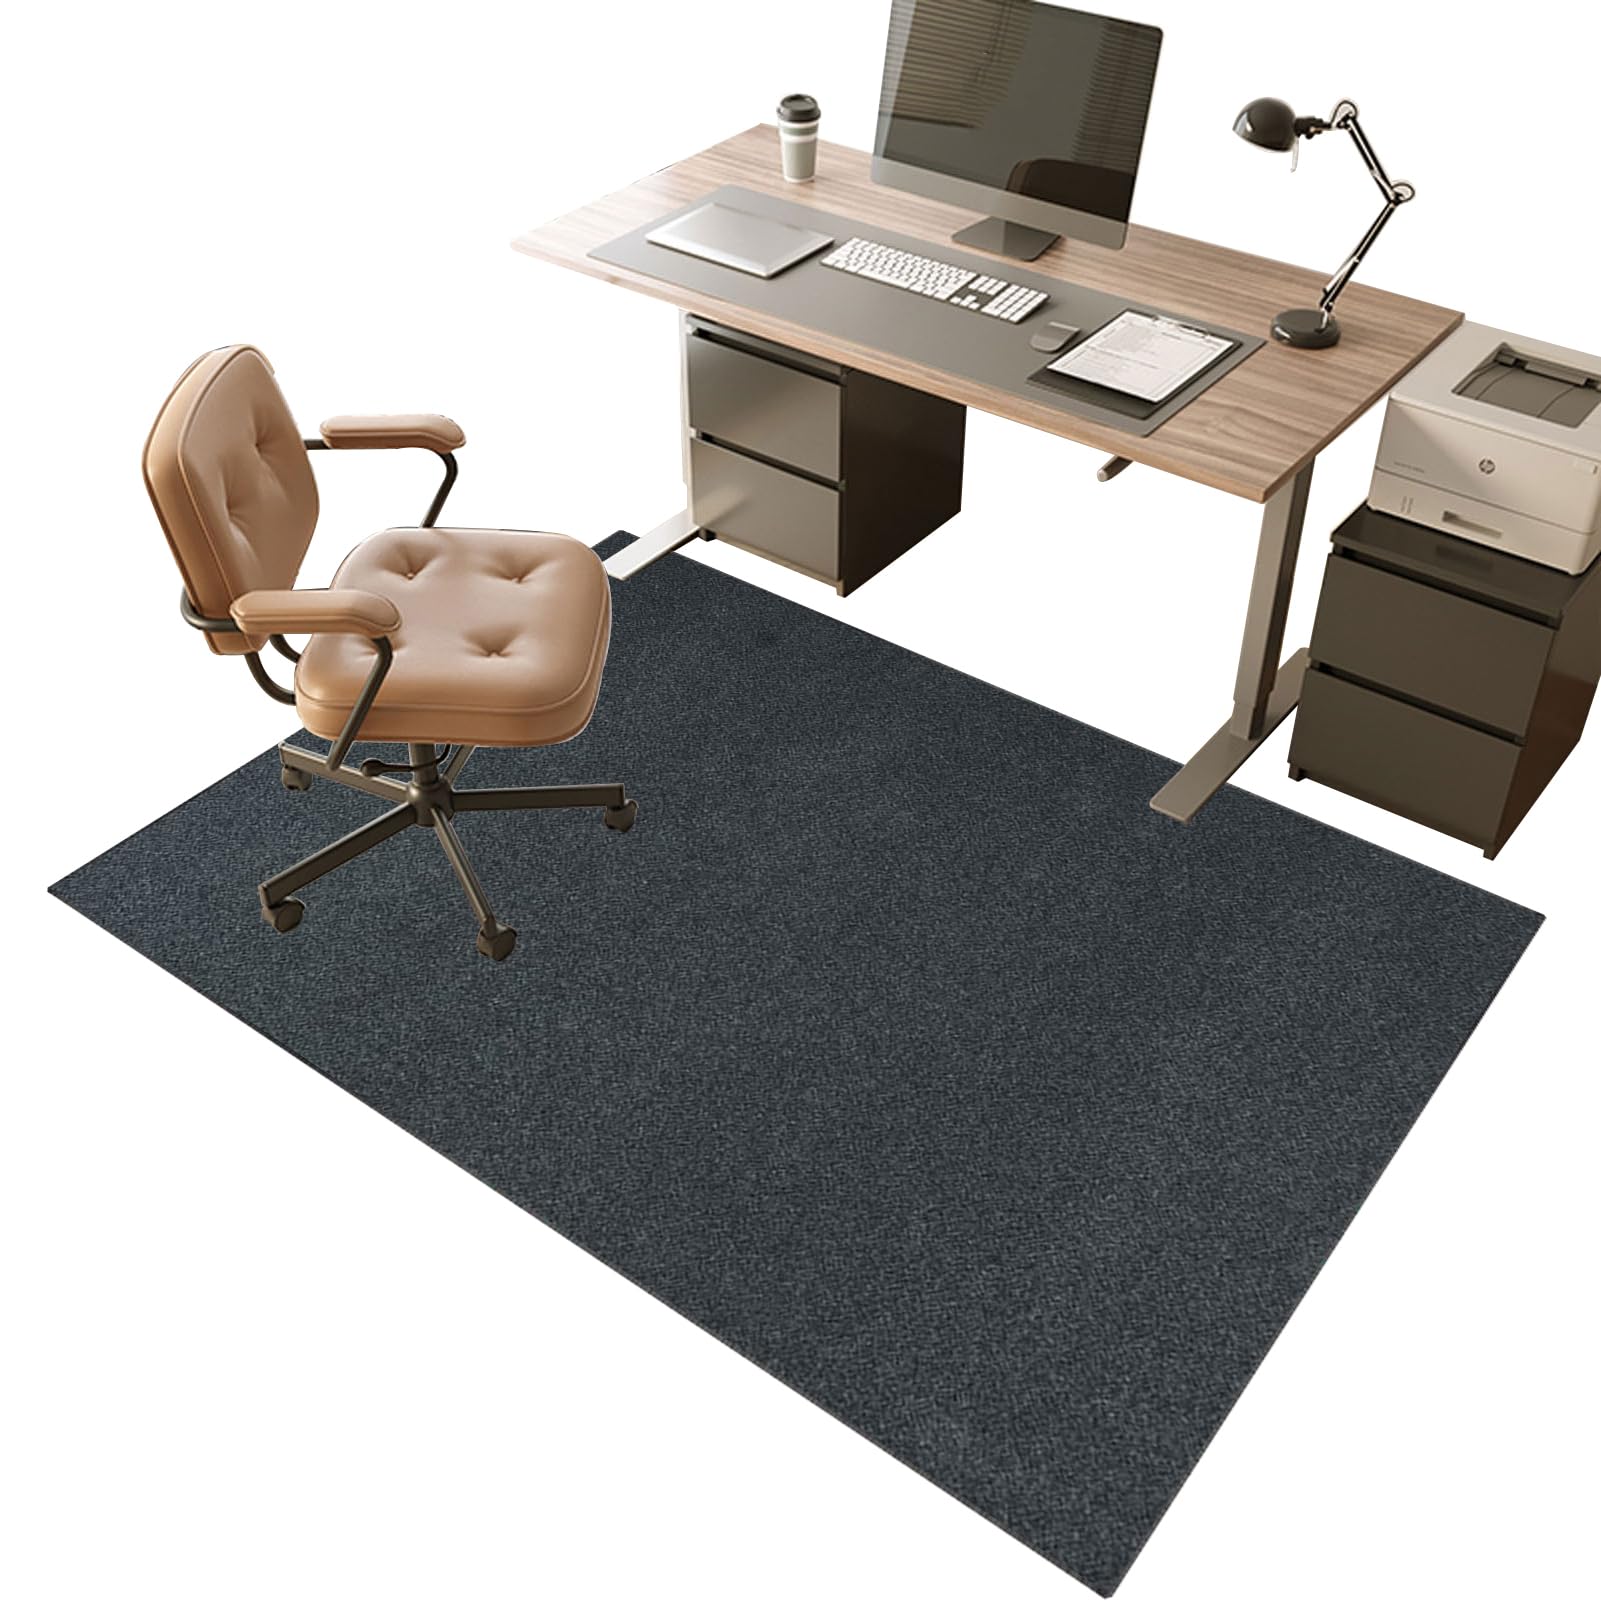 Bodenschutzmatte für Hartböden 130 x 150 cm Schreibtischstuhl Unterlage | Bodenschutzmatten Gaming | Computerstuhl Teppiche | Teppich Bürostuhl matten für Laminat | Parkett | Kratzfest rutschfest